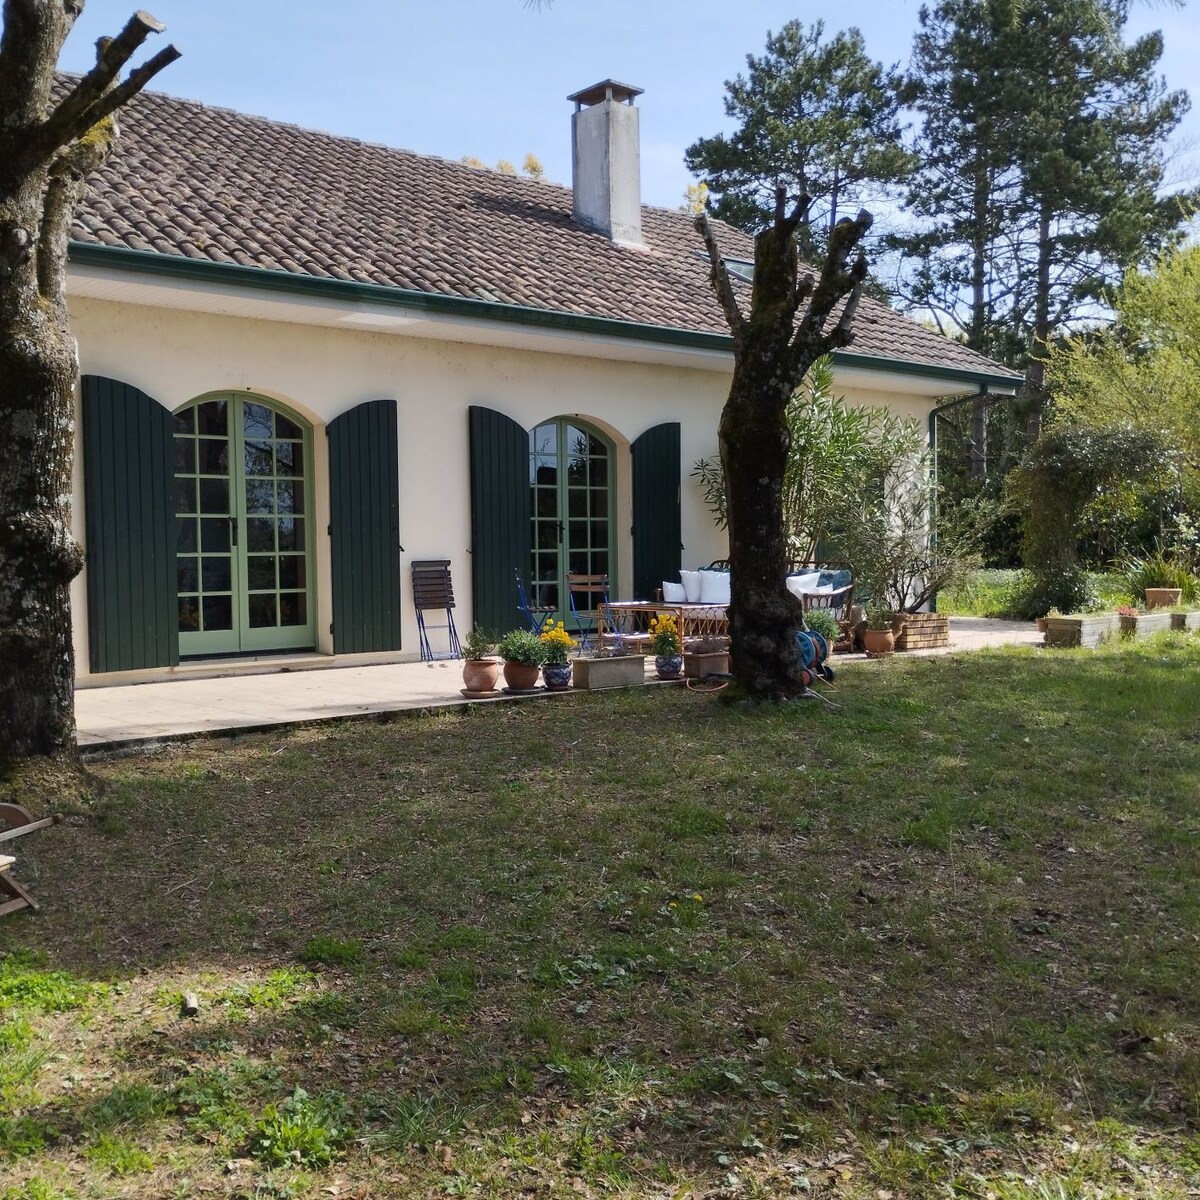 La jolie maison verte près de Bordeaux